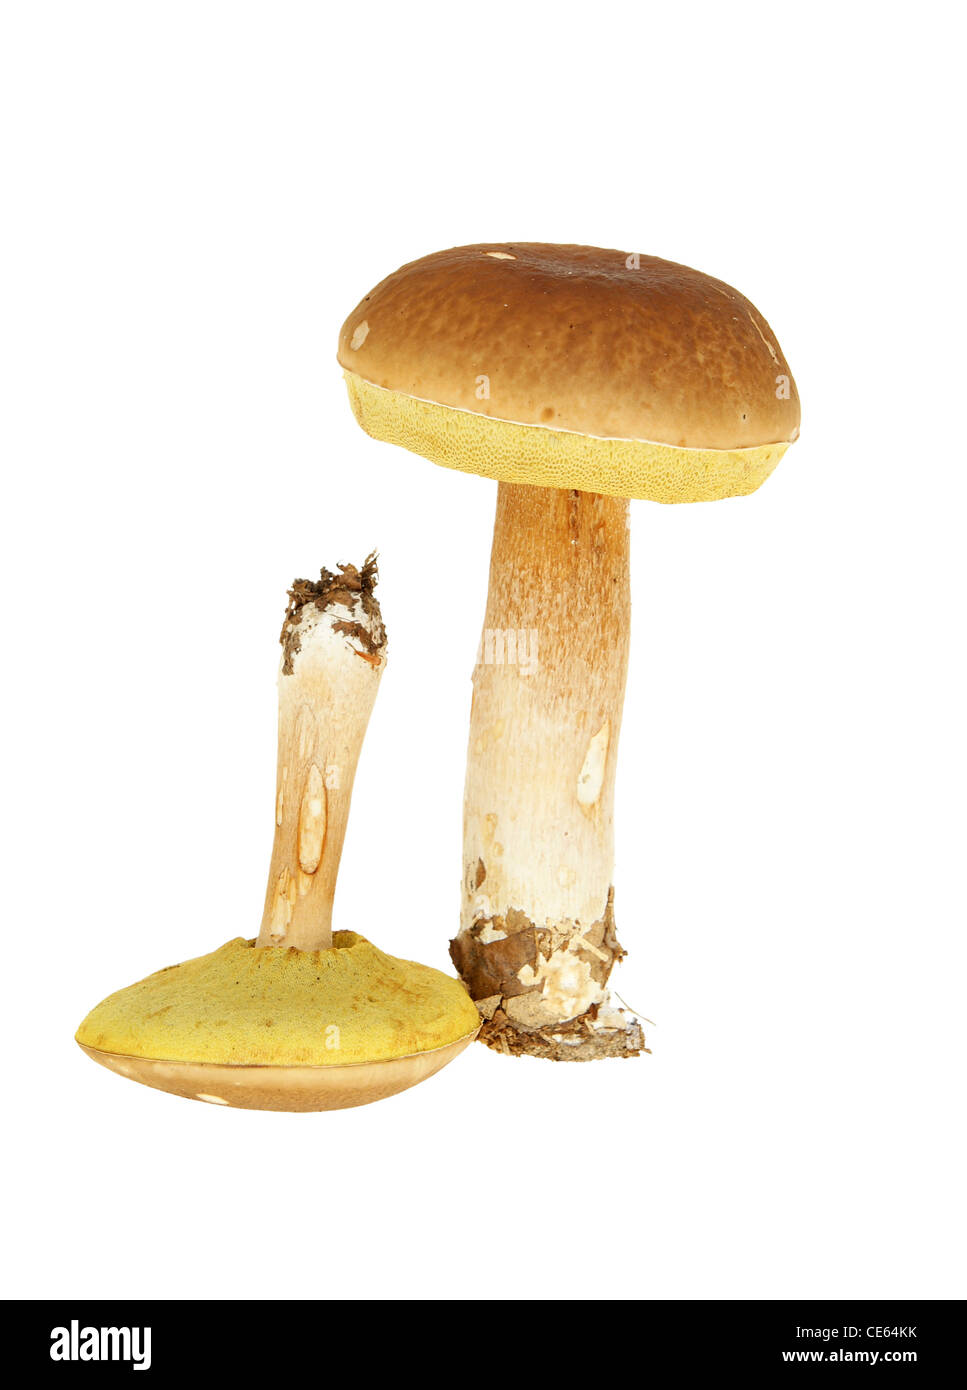 Big et Little mushroom sur fond blanc Banque D'Images